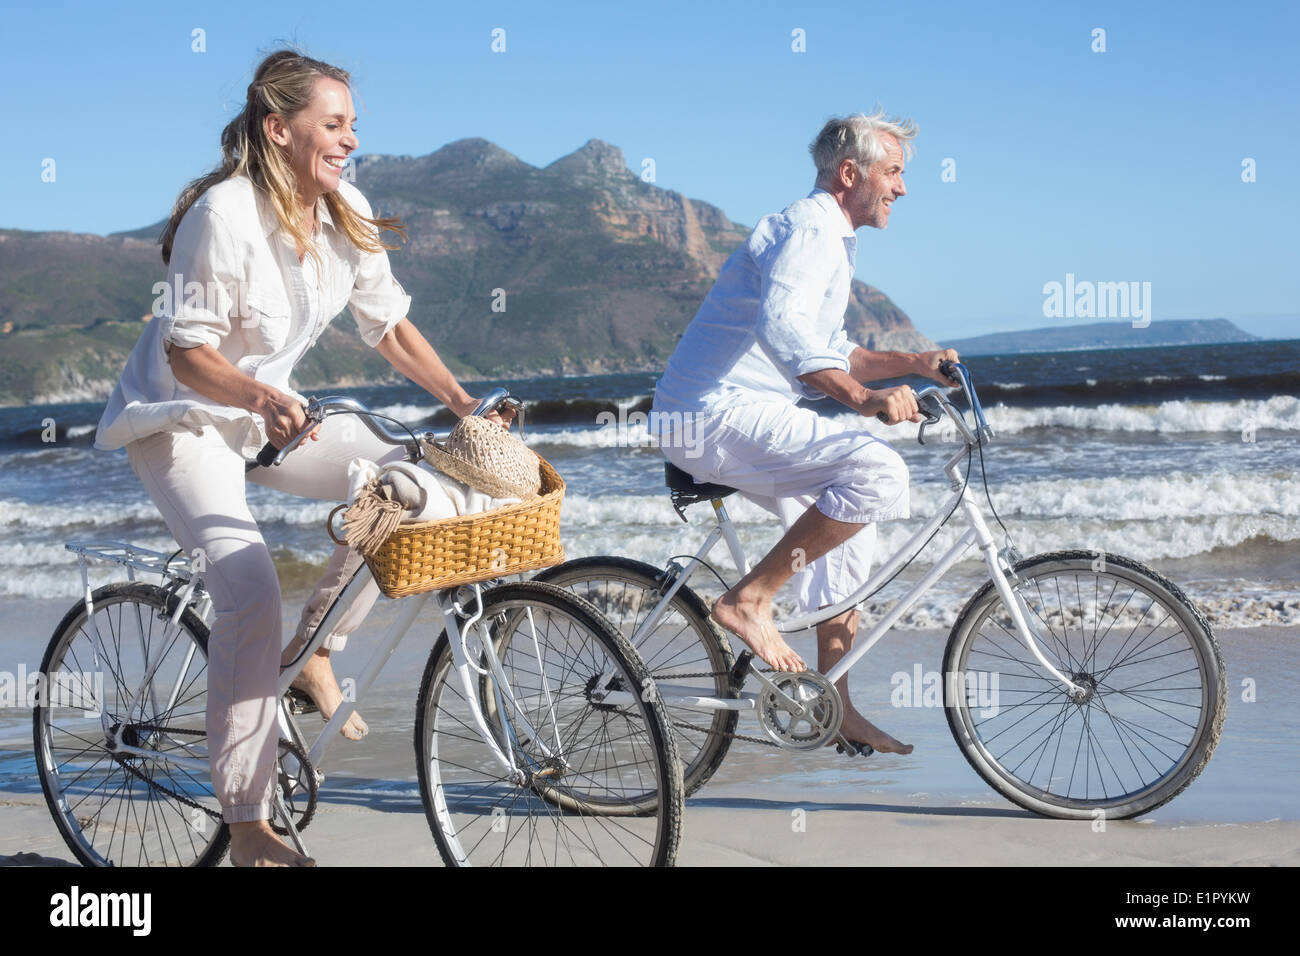 Smiling couple équitation leurs vélos sur la plage Banque D'Images